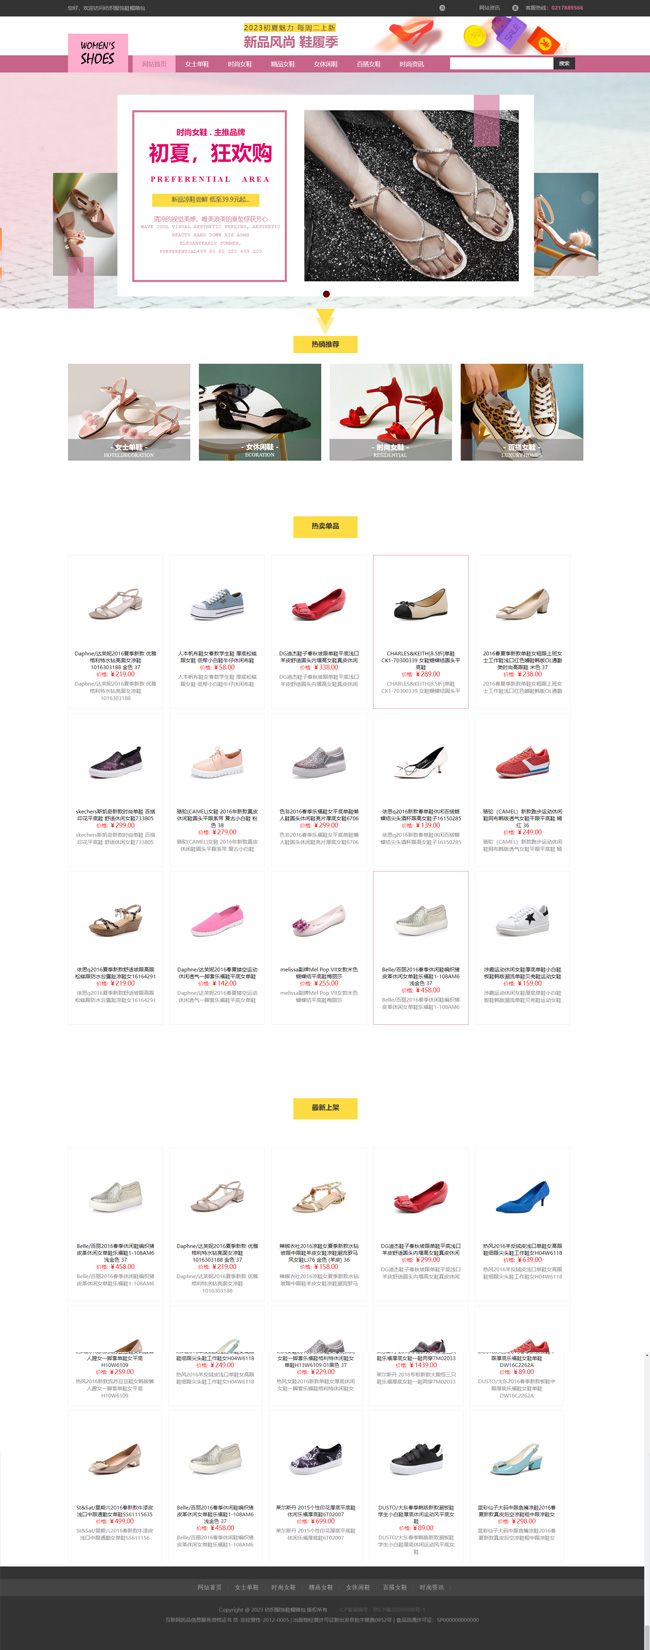 鞋子专卖店纺织服饰鞋帽箱包WordPress网站主题模板演示图